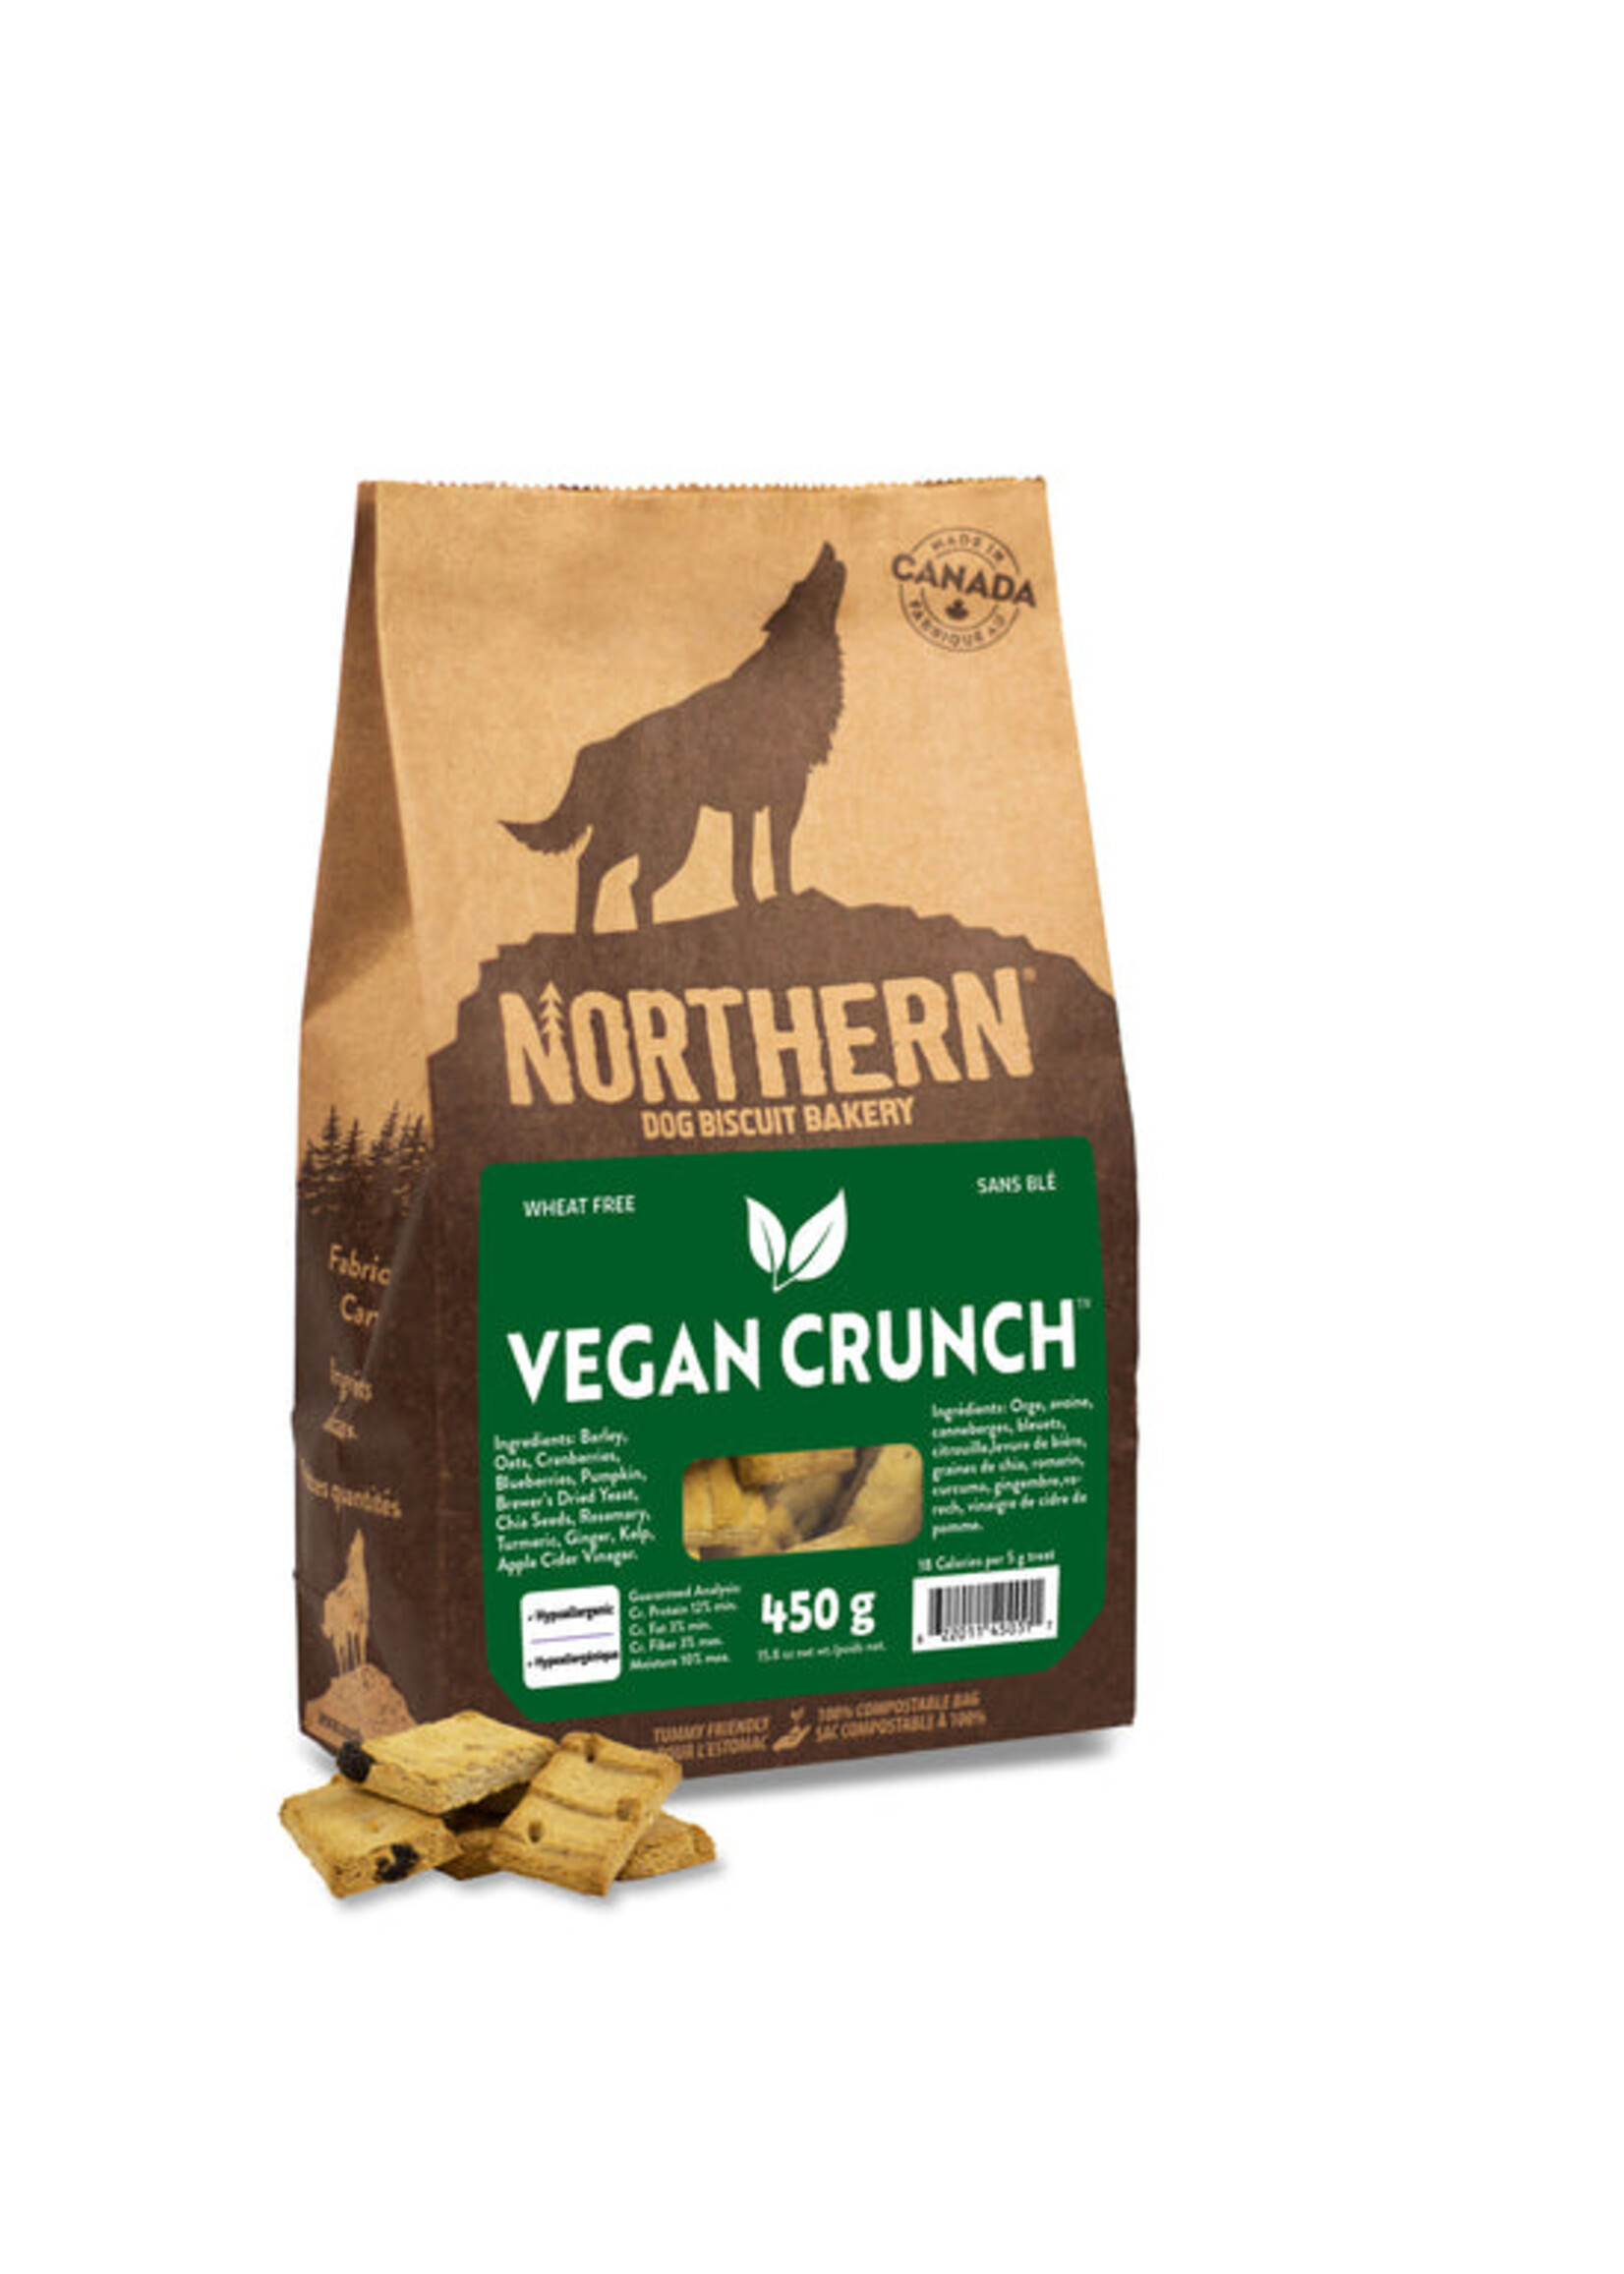 Northern Biscuit WF Vegan Crunch! 450 g / 15.9 oz